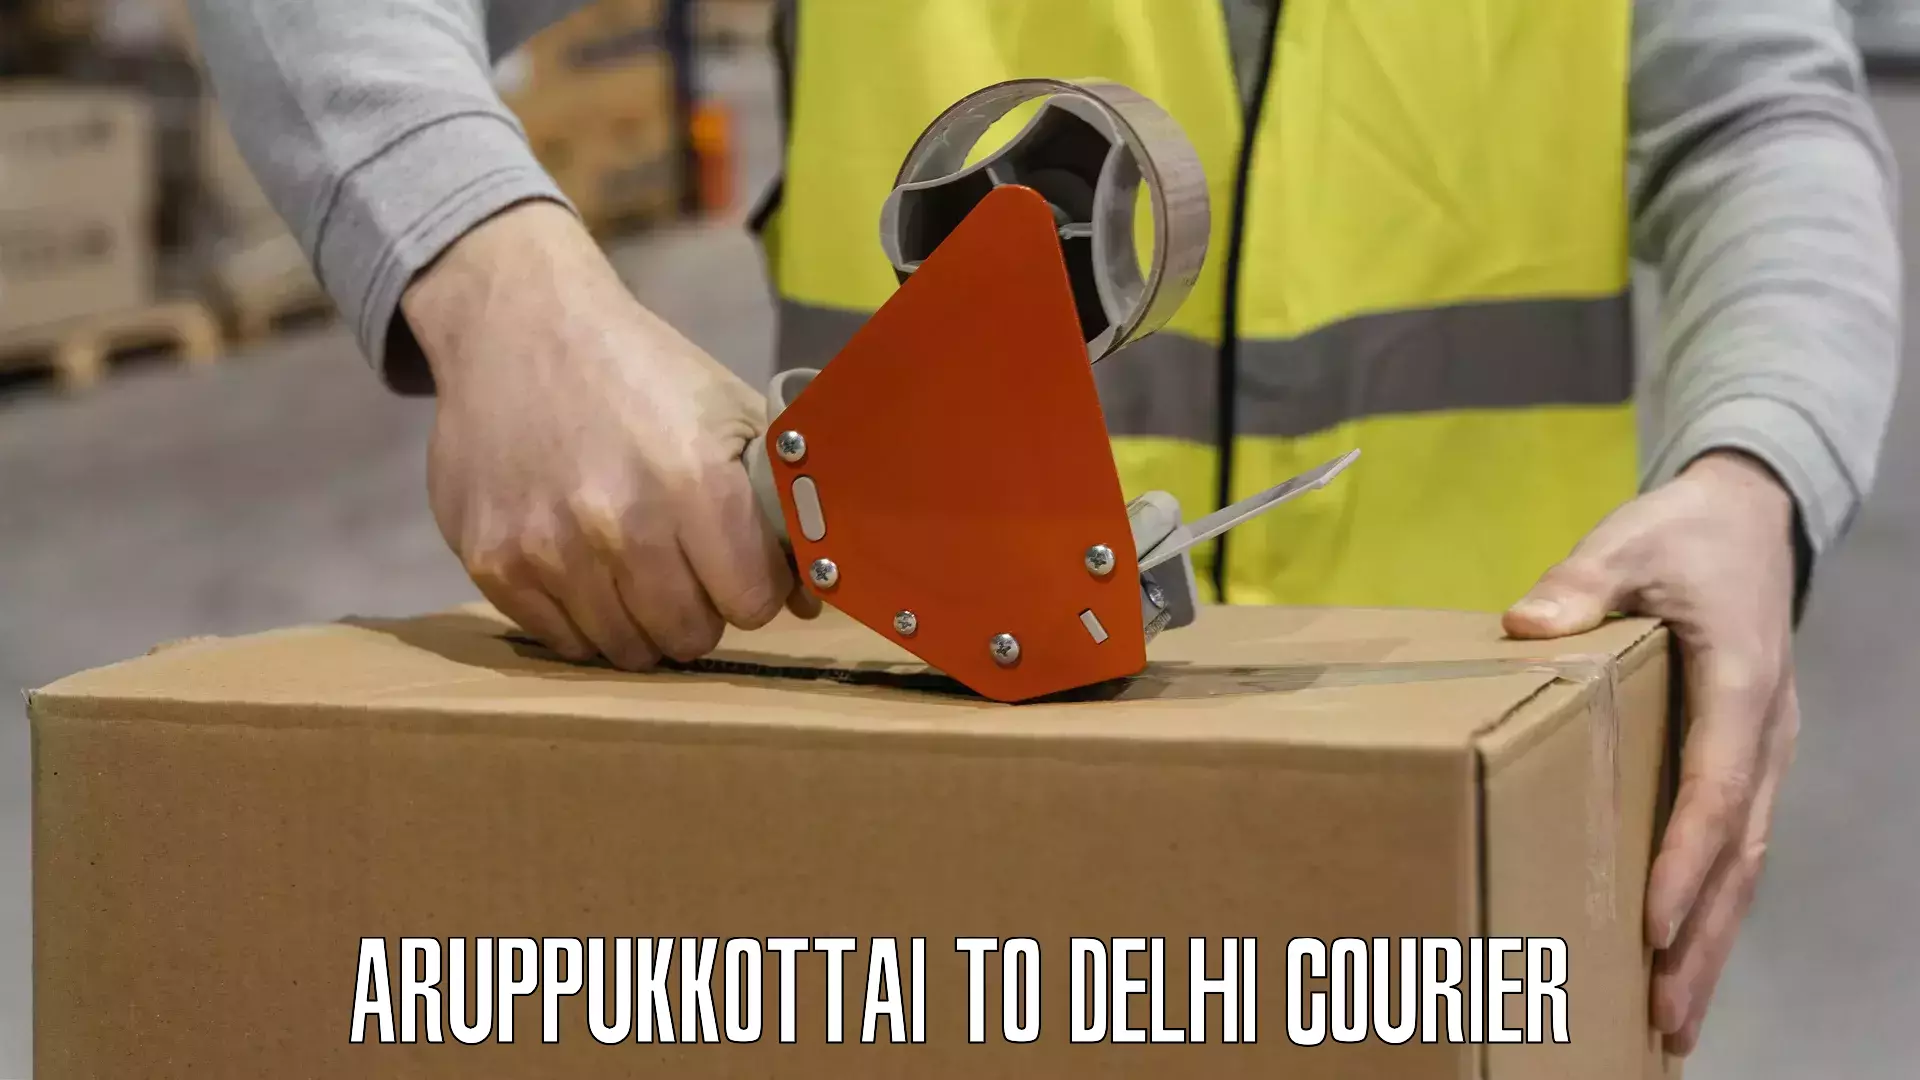 User-friendly courier app Aruppukkottai to IIT Delhi